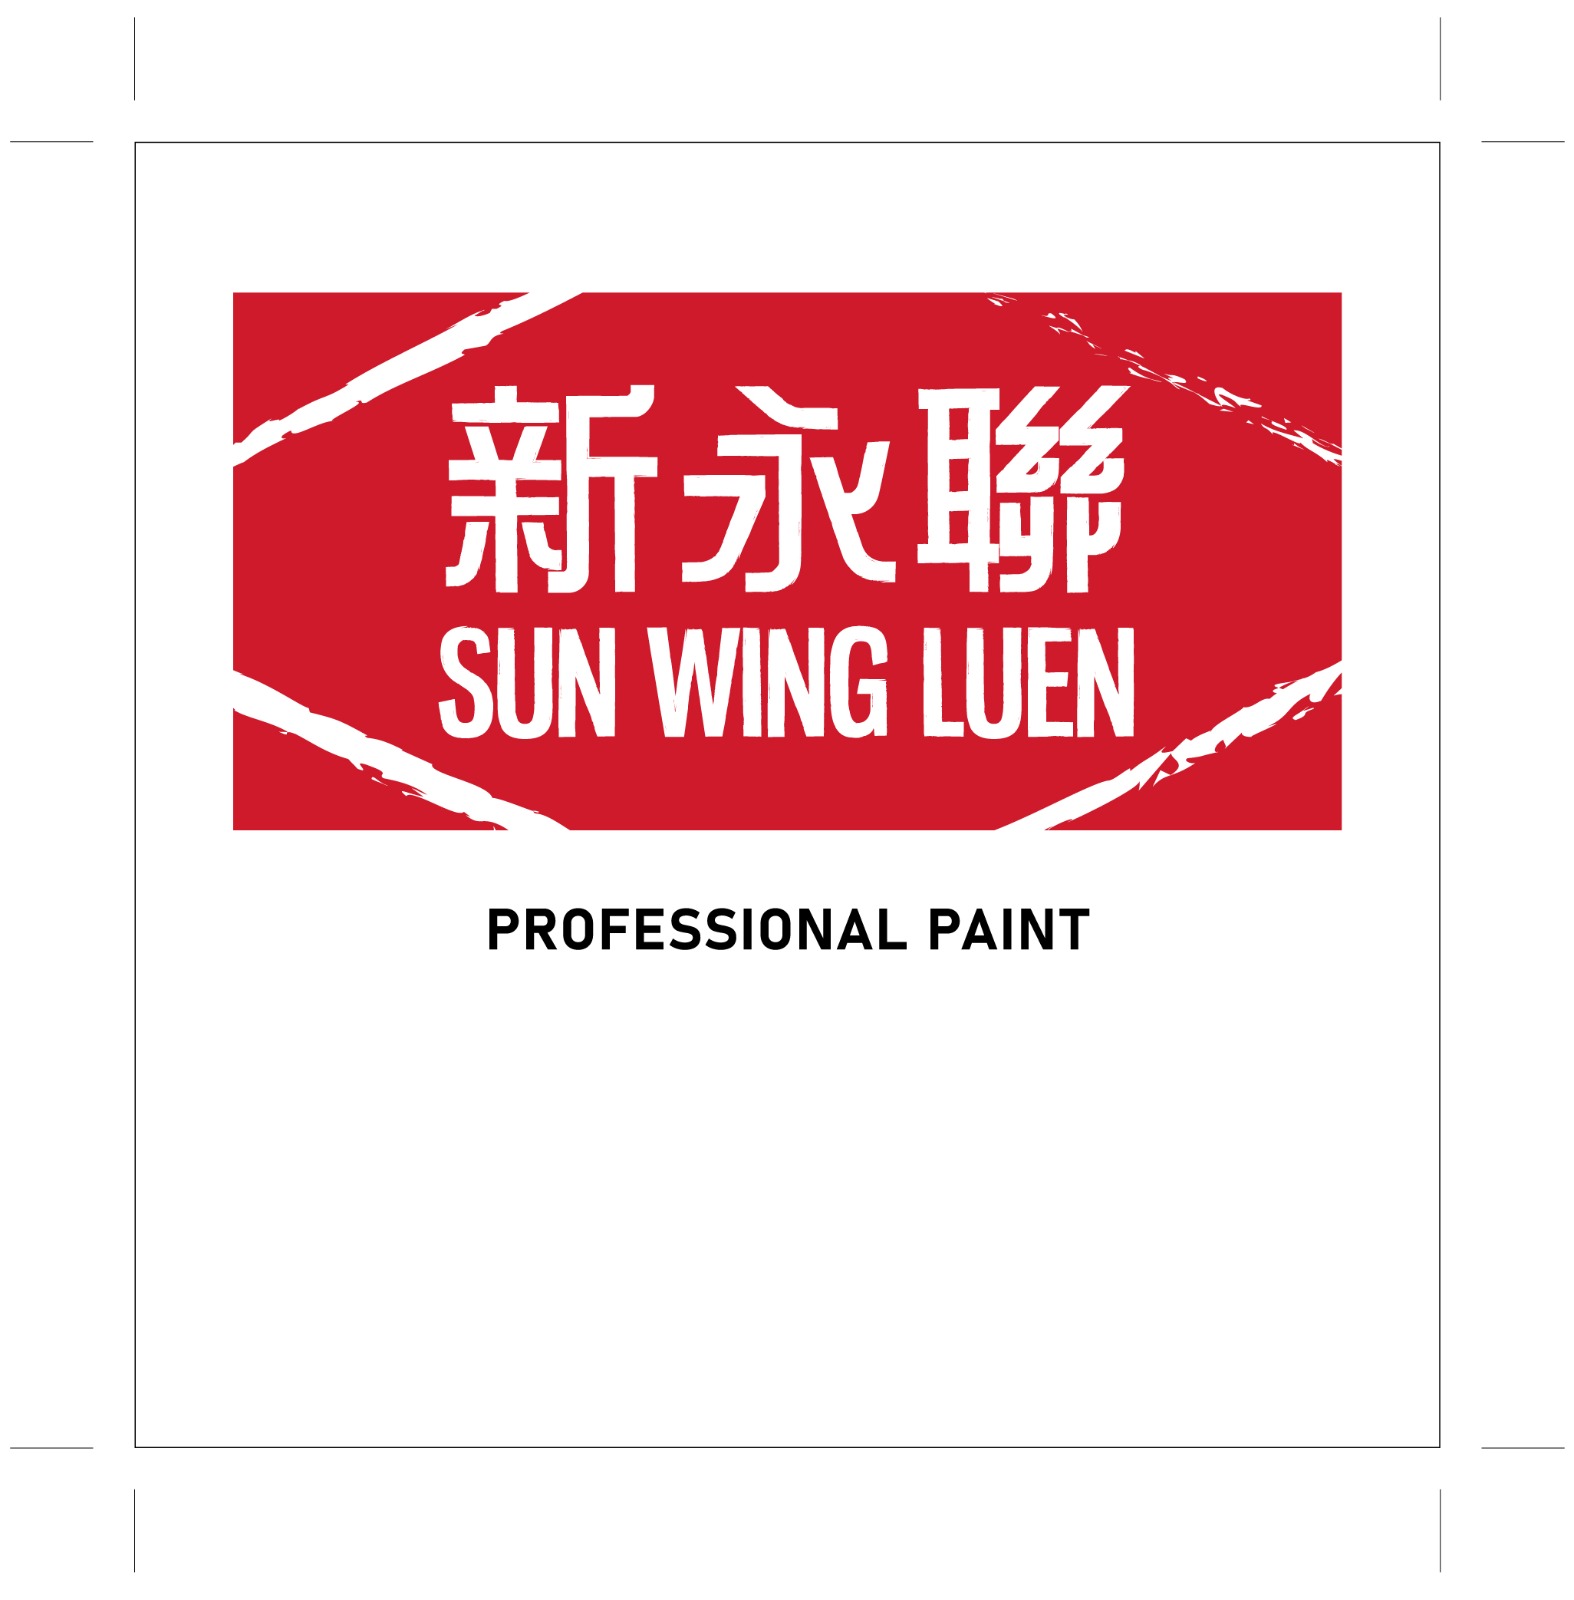 新永聯牌醇酸磁漆-自家品牌-SUN-WING-LUEN-Professional-Paint-木門翻新磁漆-金屬防銹底漆-防鏽漆-防銹底油-Enamel-paint-磁油2